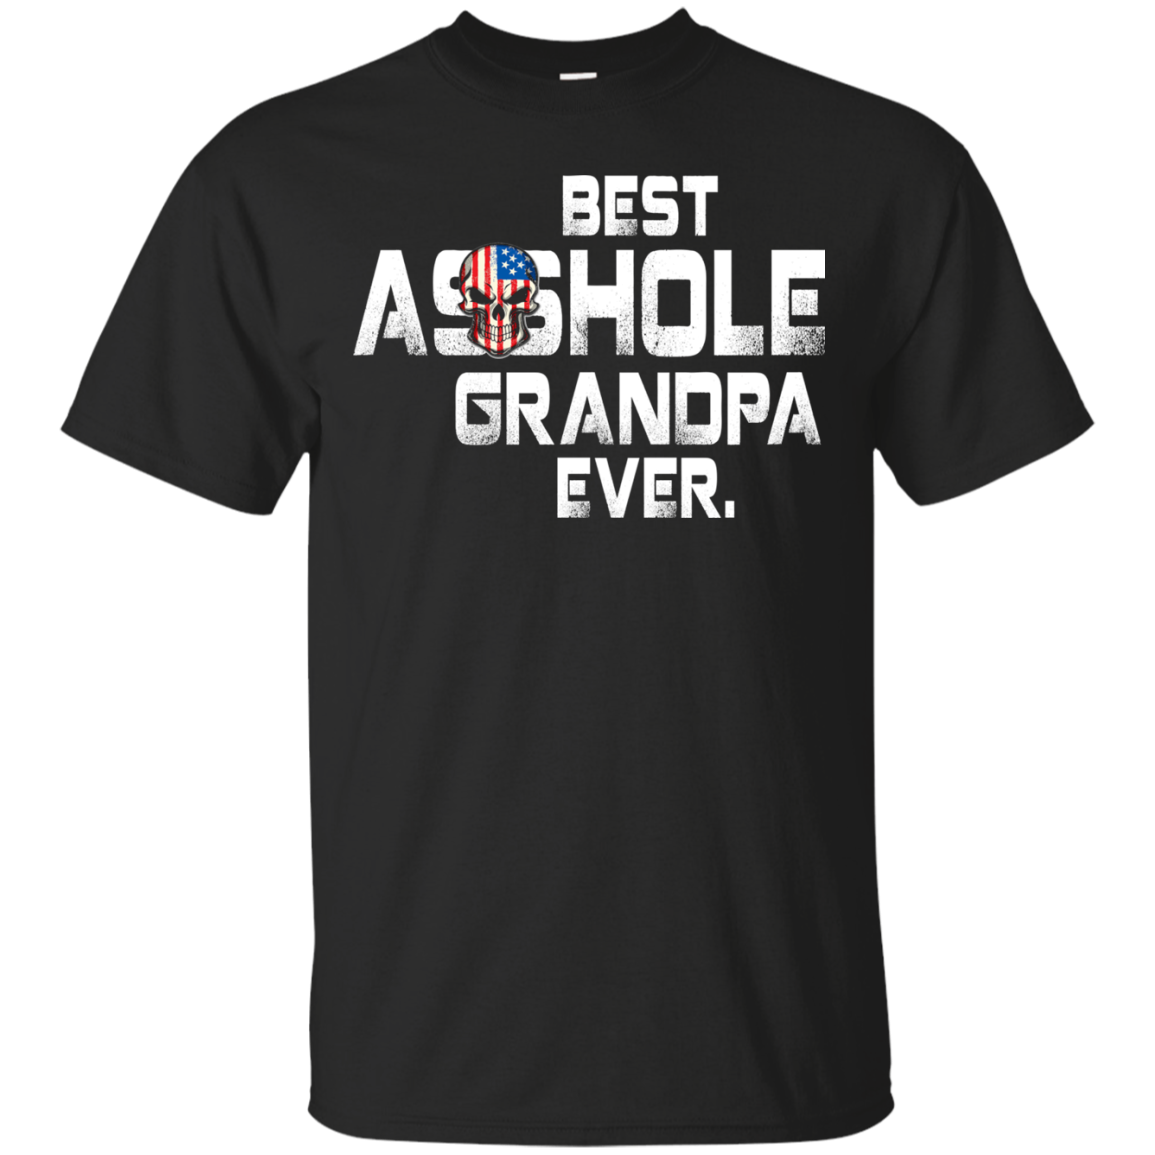 Best Asshole Grandpa Ever t-shirt, hoodie, tank